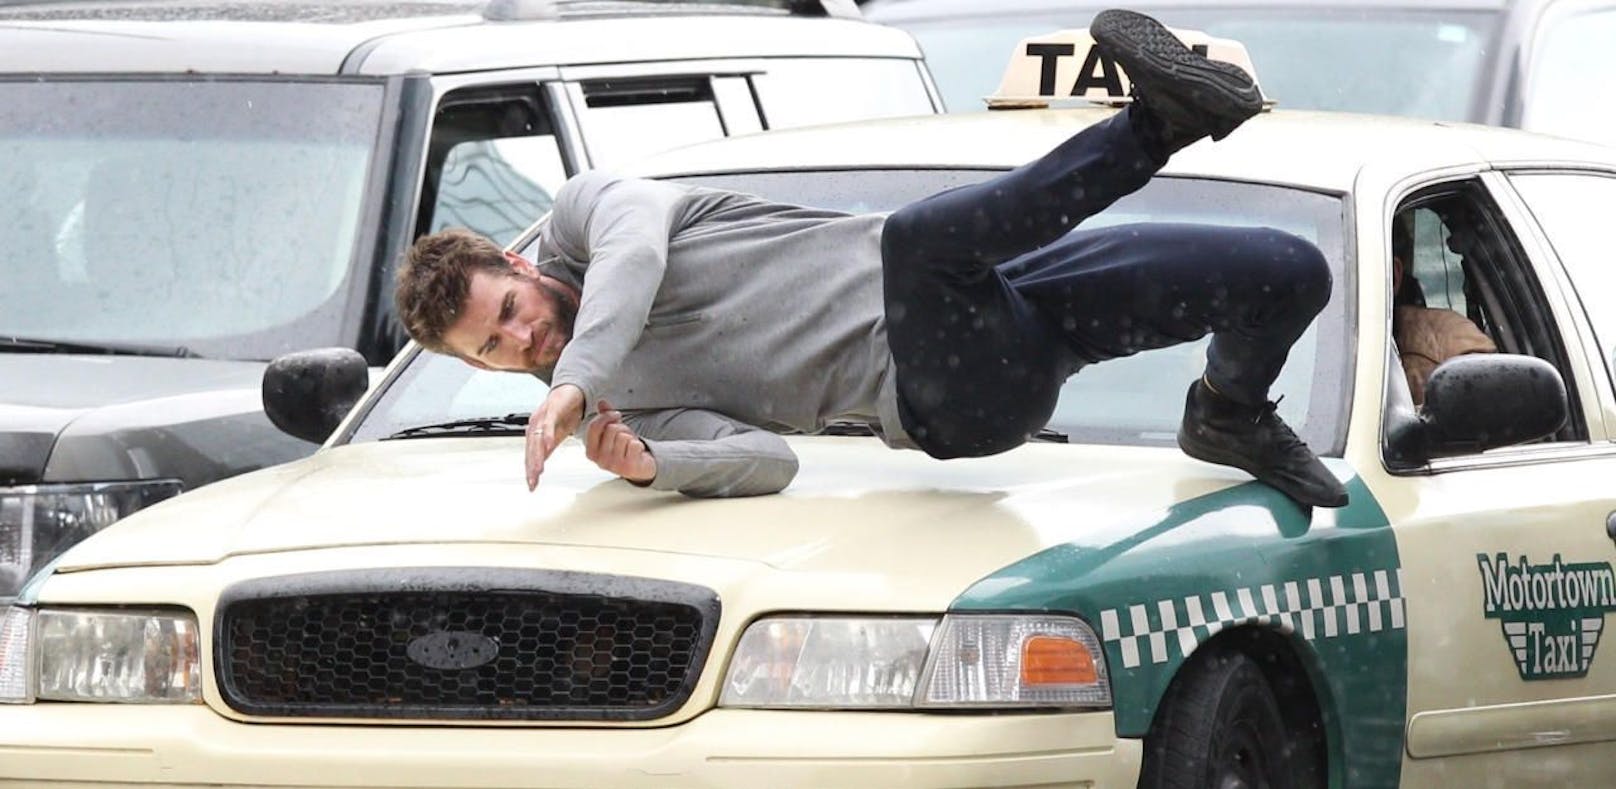 Oh Gott! Liam Hemsworth von Taxi niedergefahren